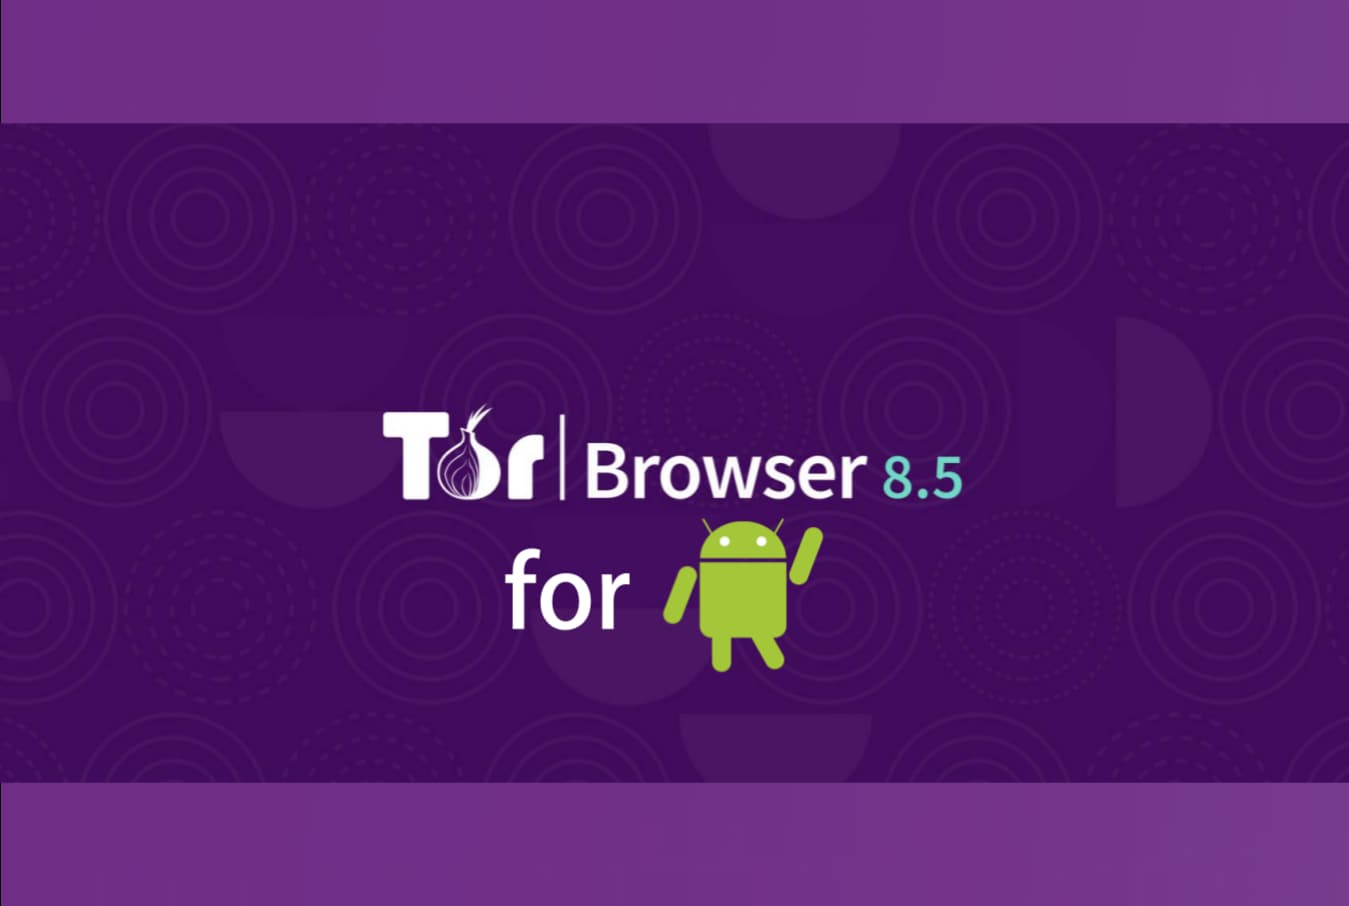 Tor browser download андроид hydra скачать тор браузер с официального сайта бесплатно на русском языке гирда